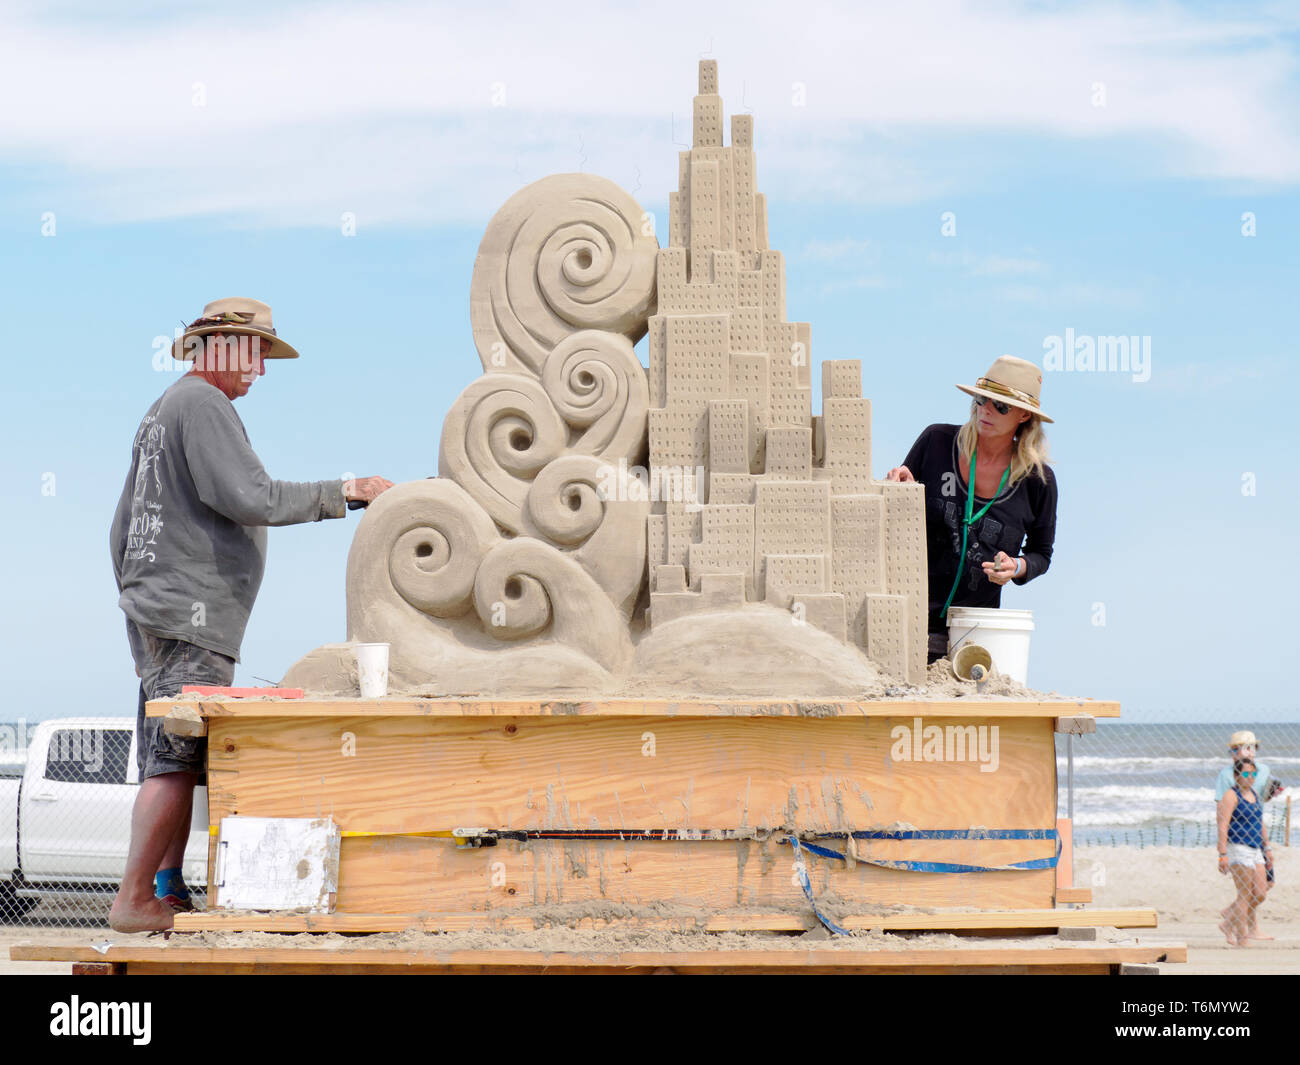 Laura Cimador-Gowdy und John gowdy von Castelfranco, Italien sculpting ihren ersten Preis gewinnen, "Gegensätze ziehen sich an." 2019 Texas Sandfest. Stockfoto